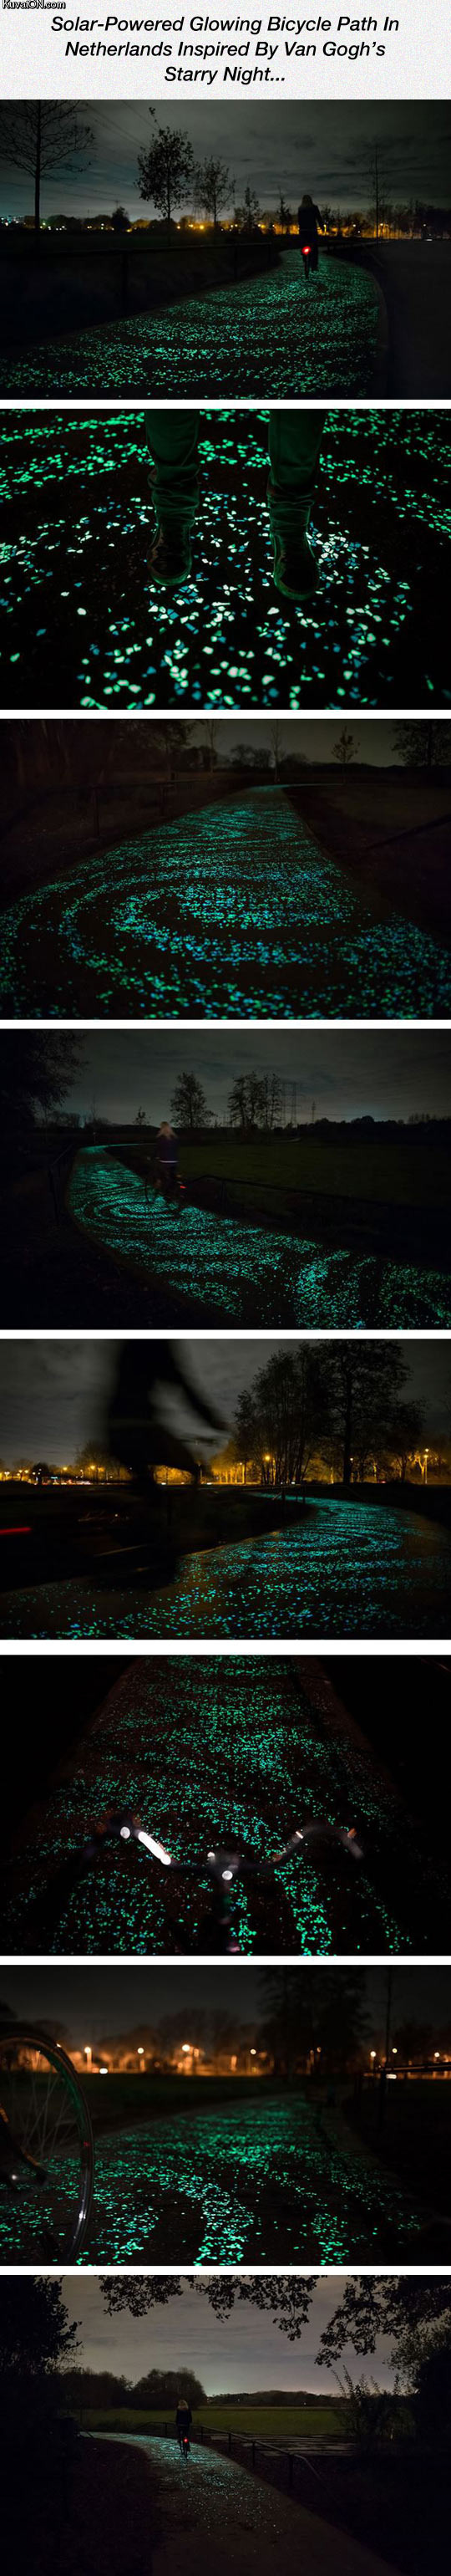 beautiful_glowing_bicycle_path.jpg